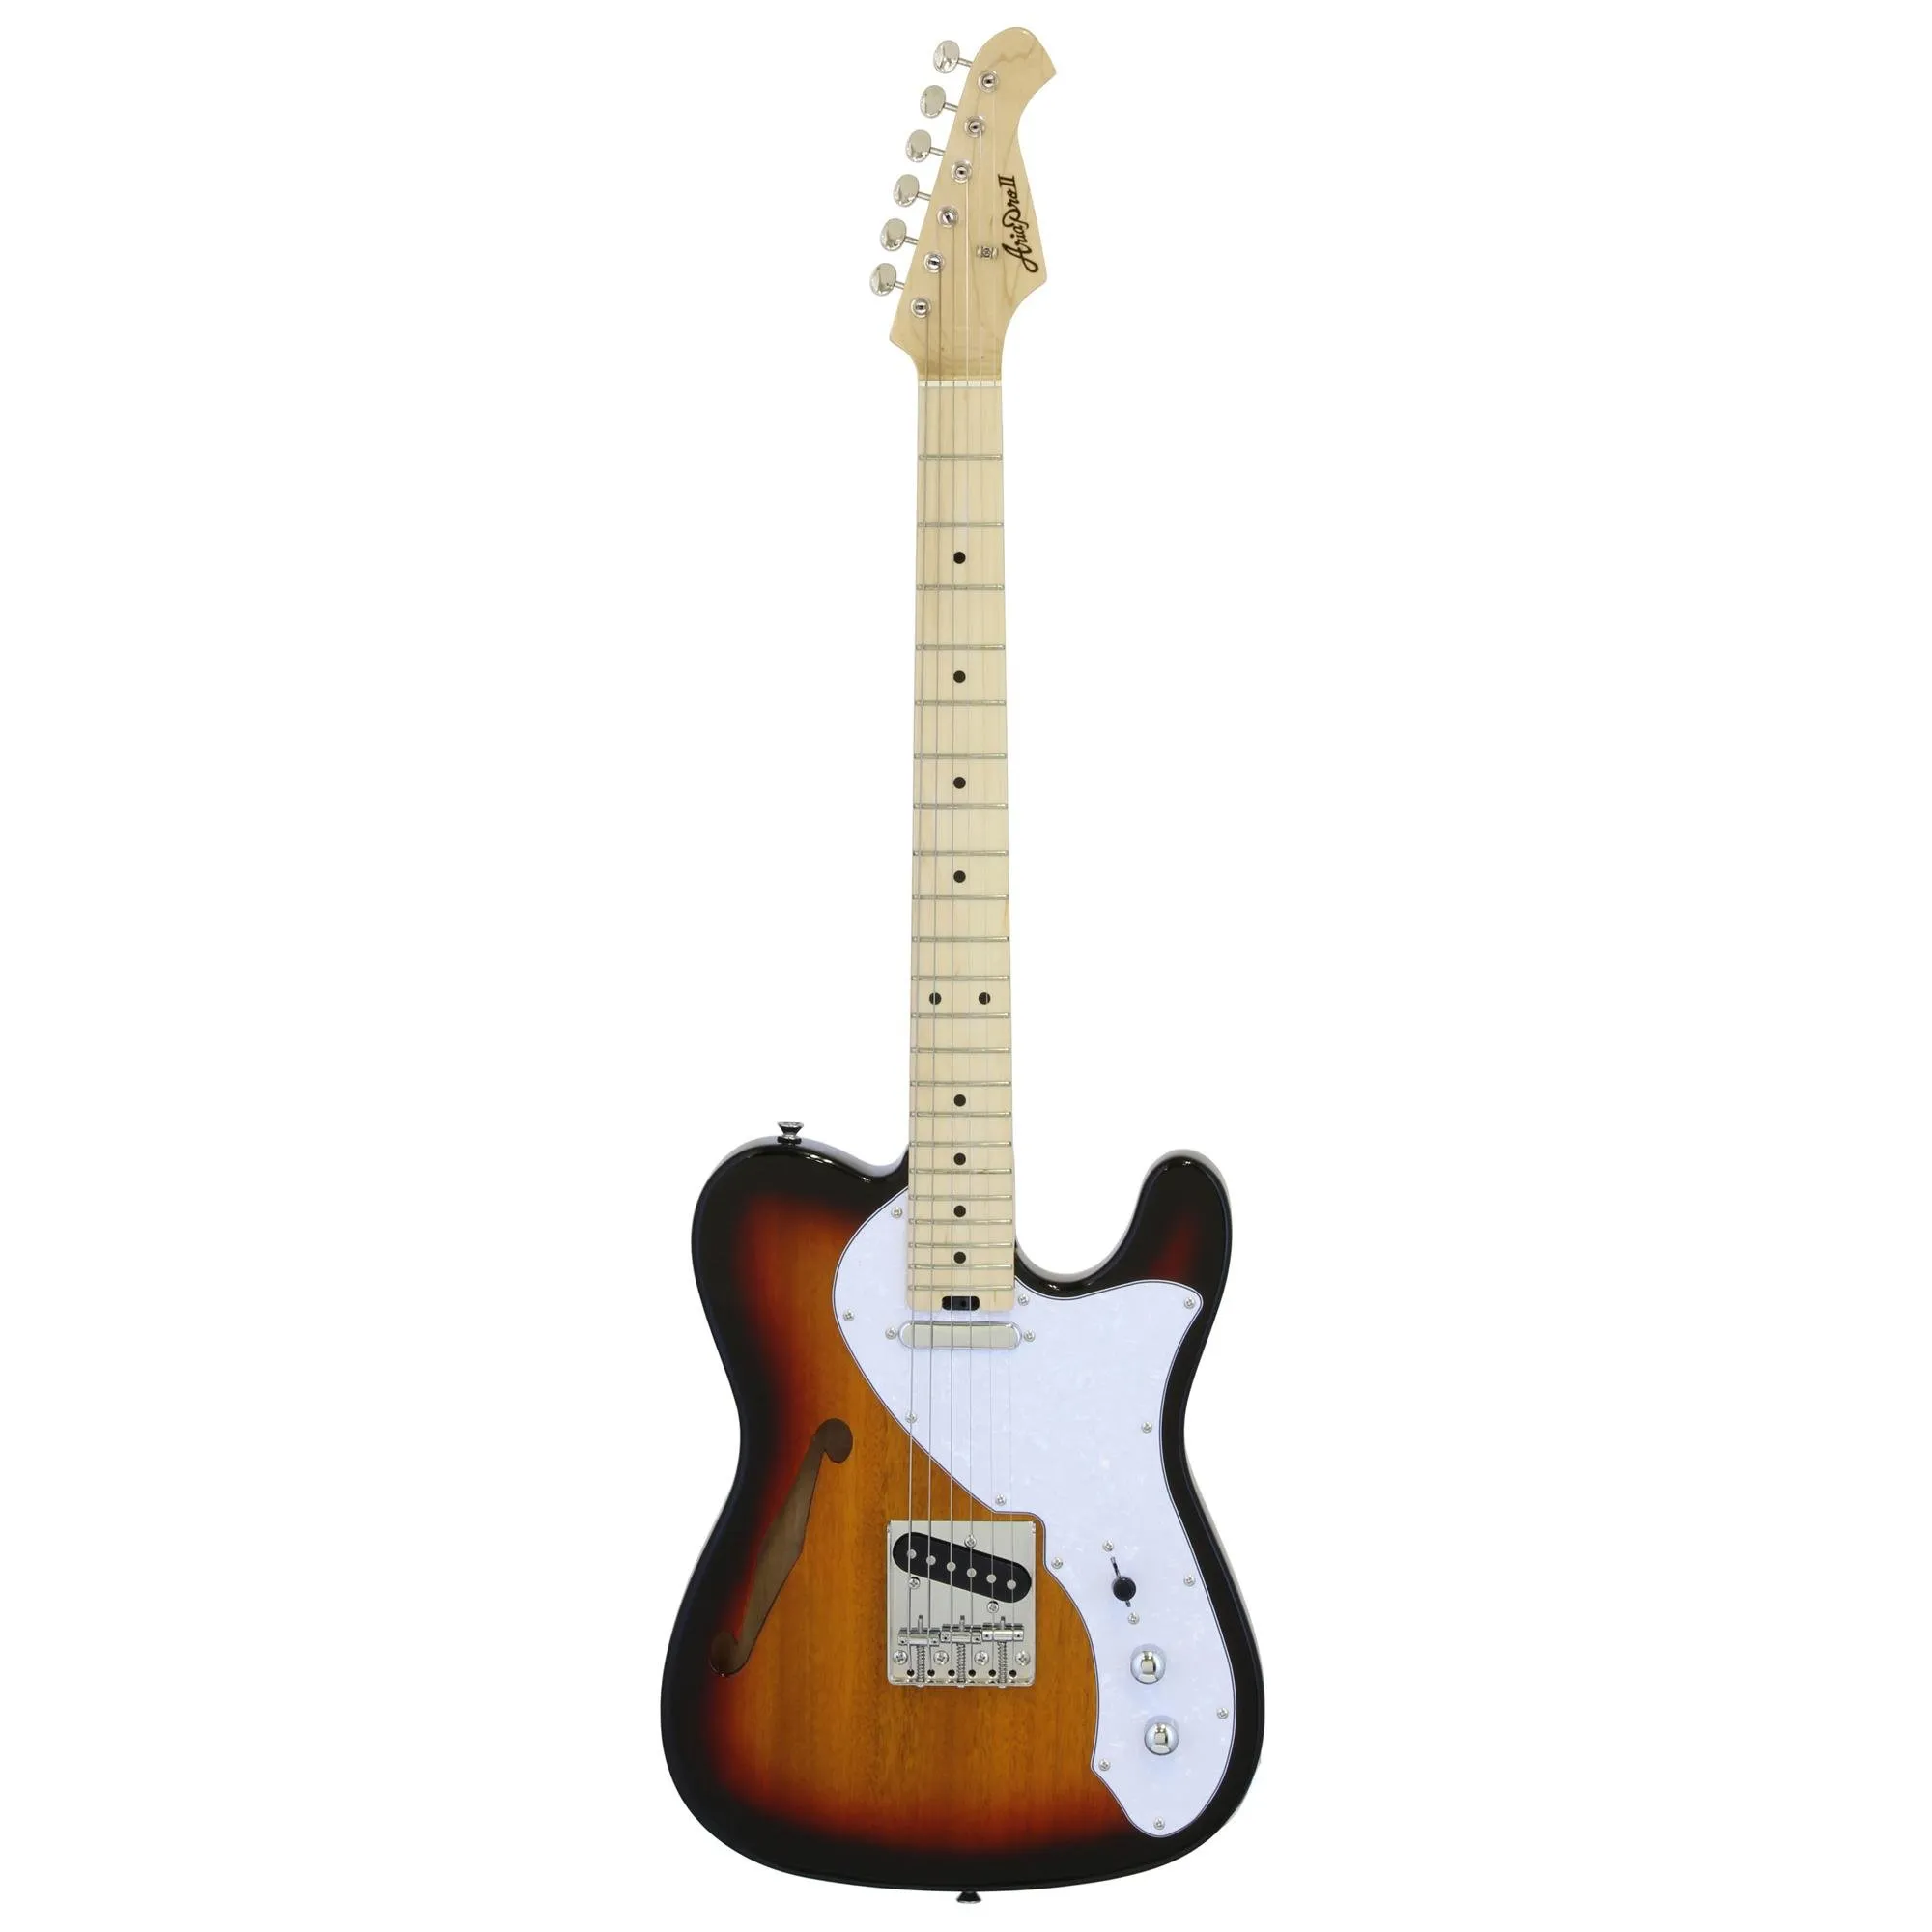 Guitarra Aria TEG-TL 3 Tone Sunburst por 2.689,00 à vista no boleto/pix ou parcele em até 12x sem juros. Compre na loja Mundomax!